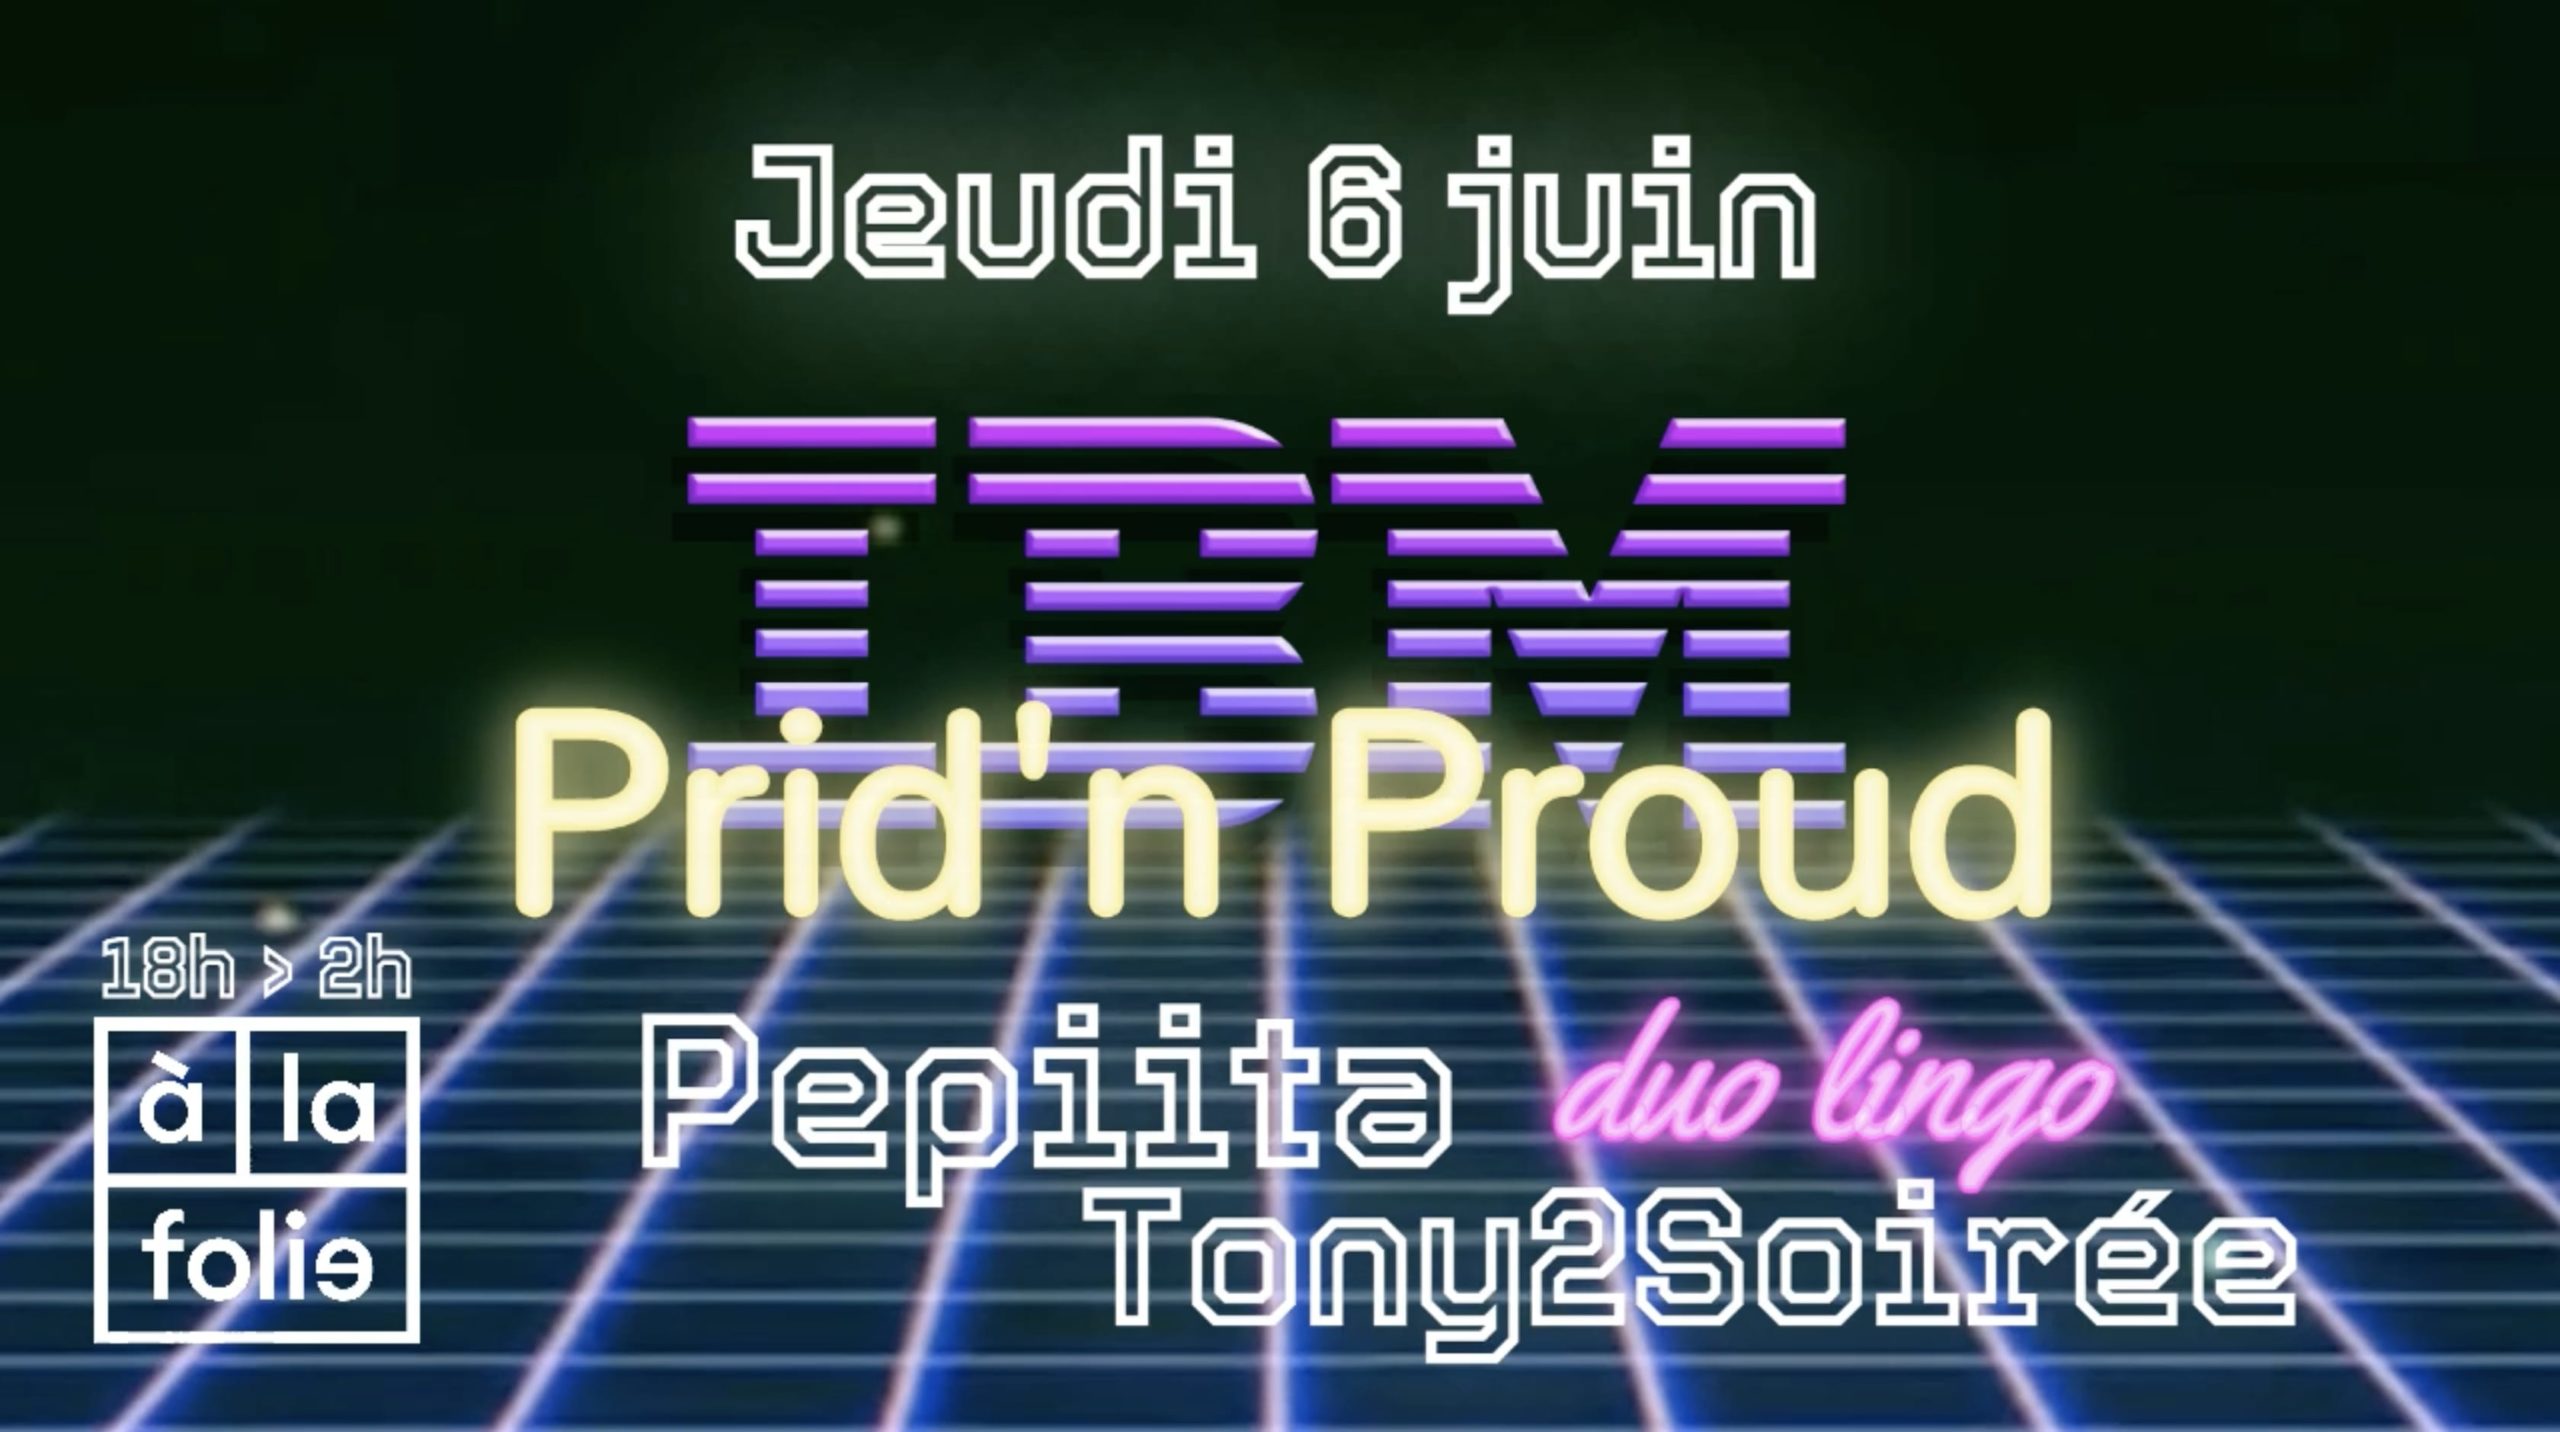 IBM Special Prid'n'Proud